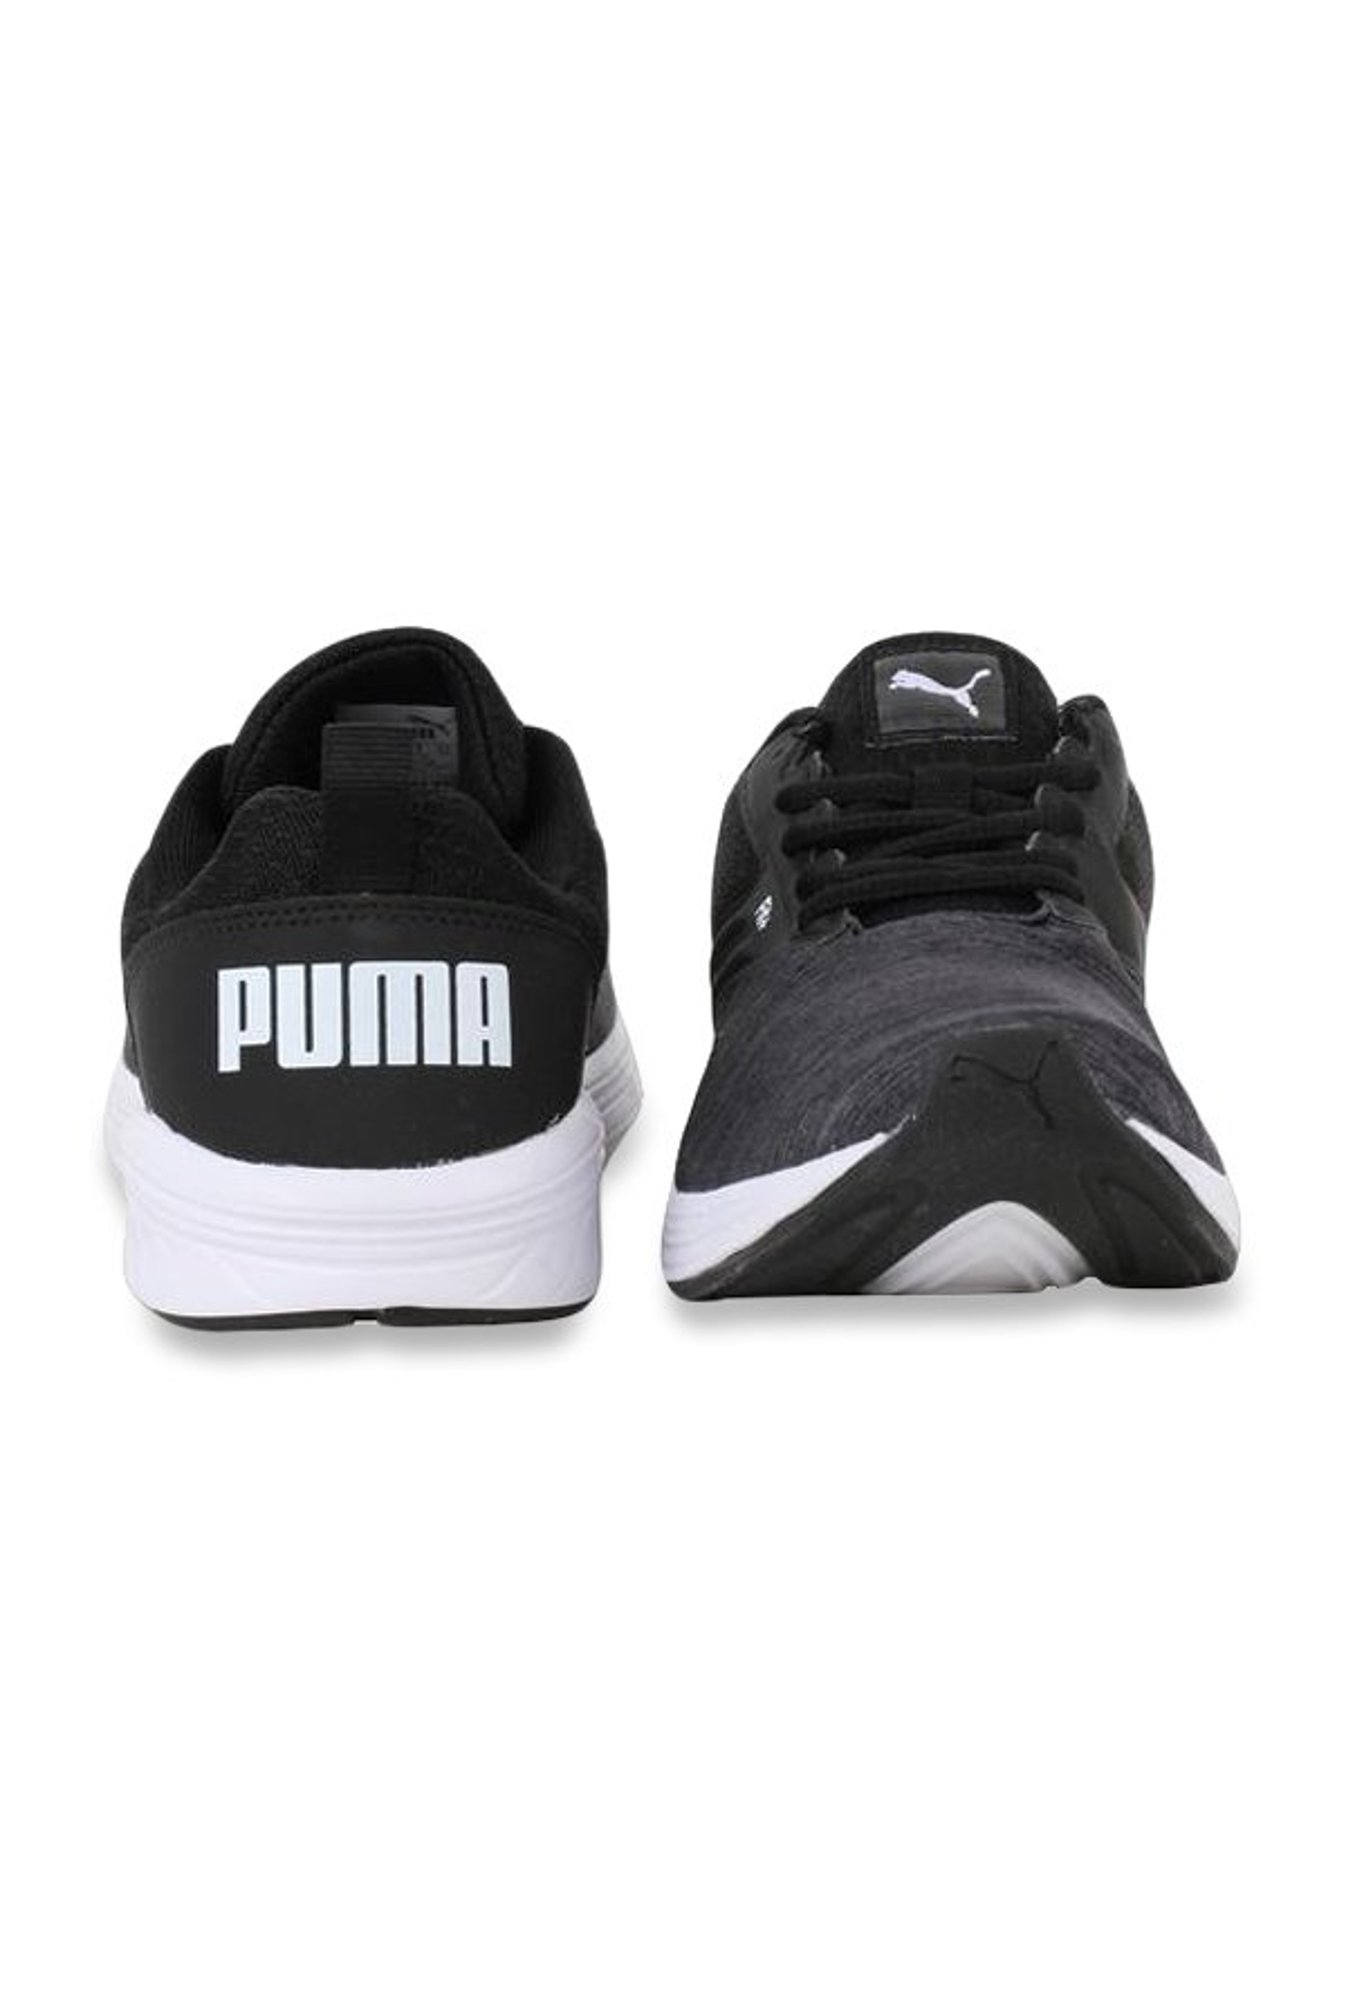 puma comet idp running shoes